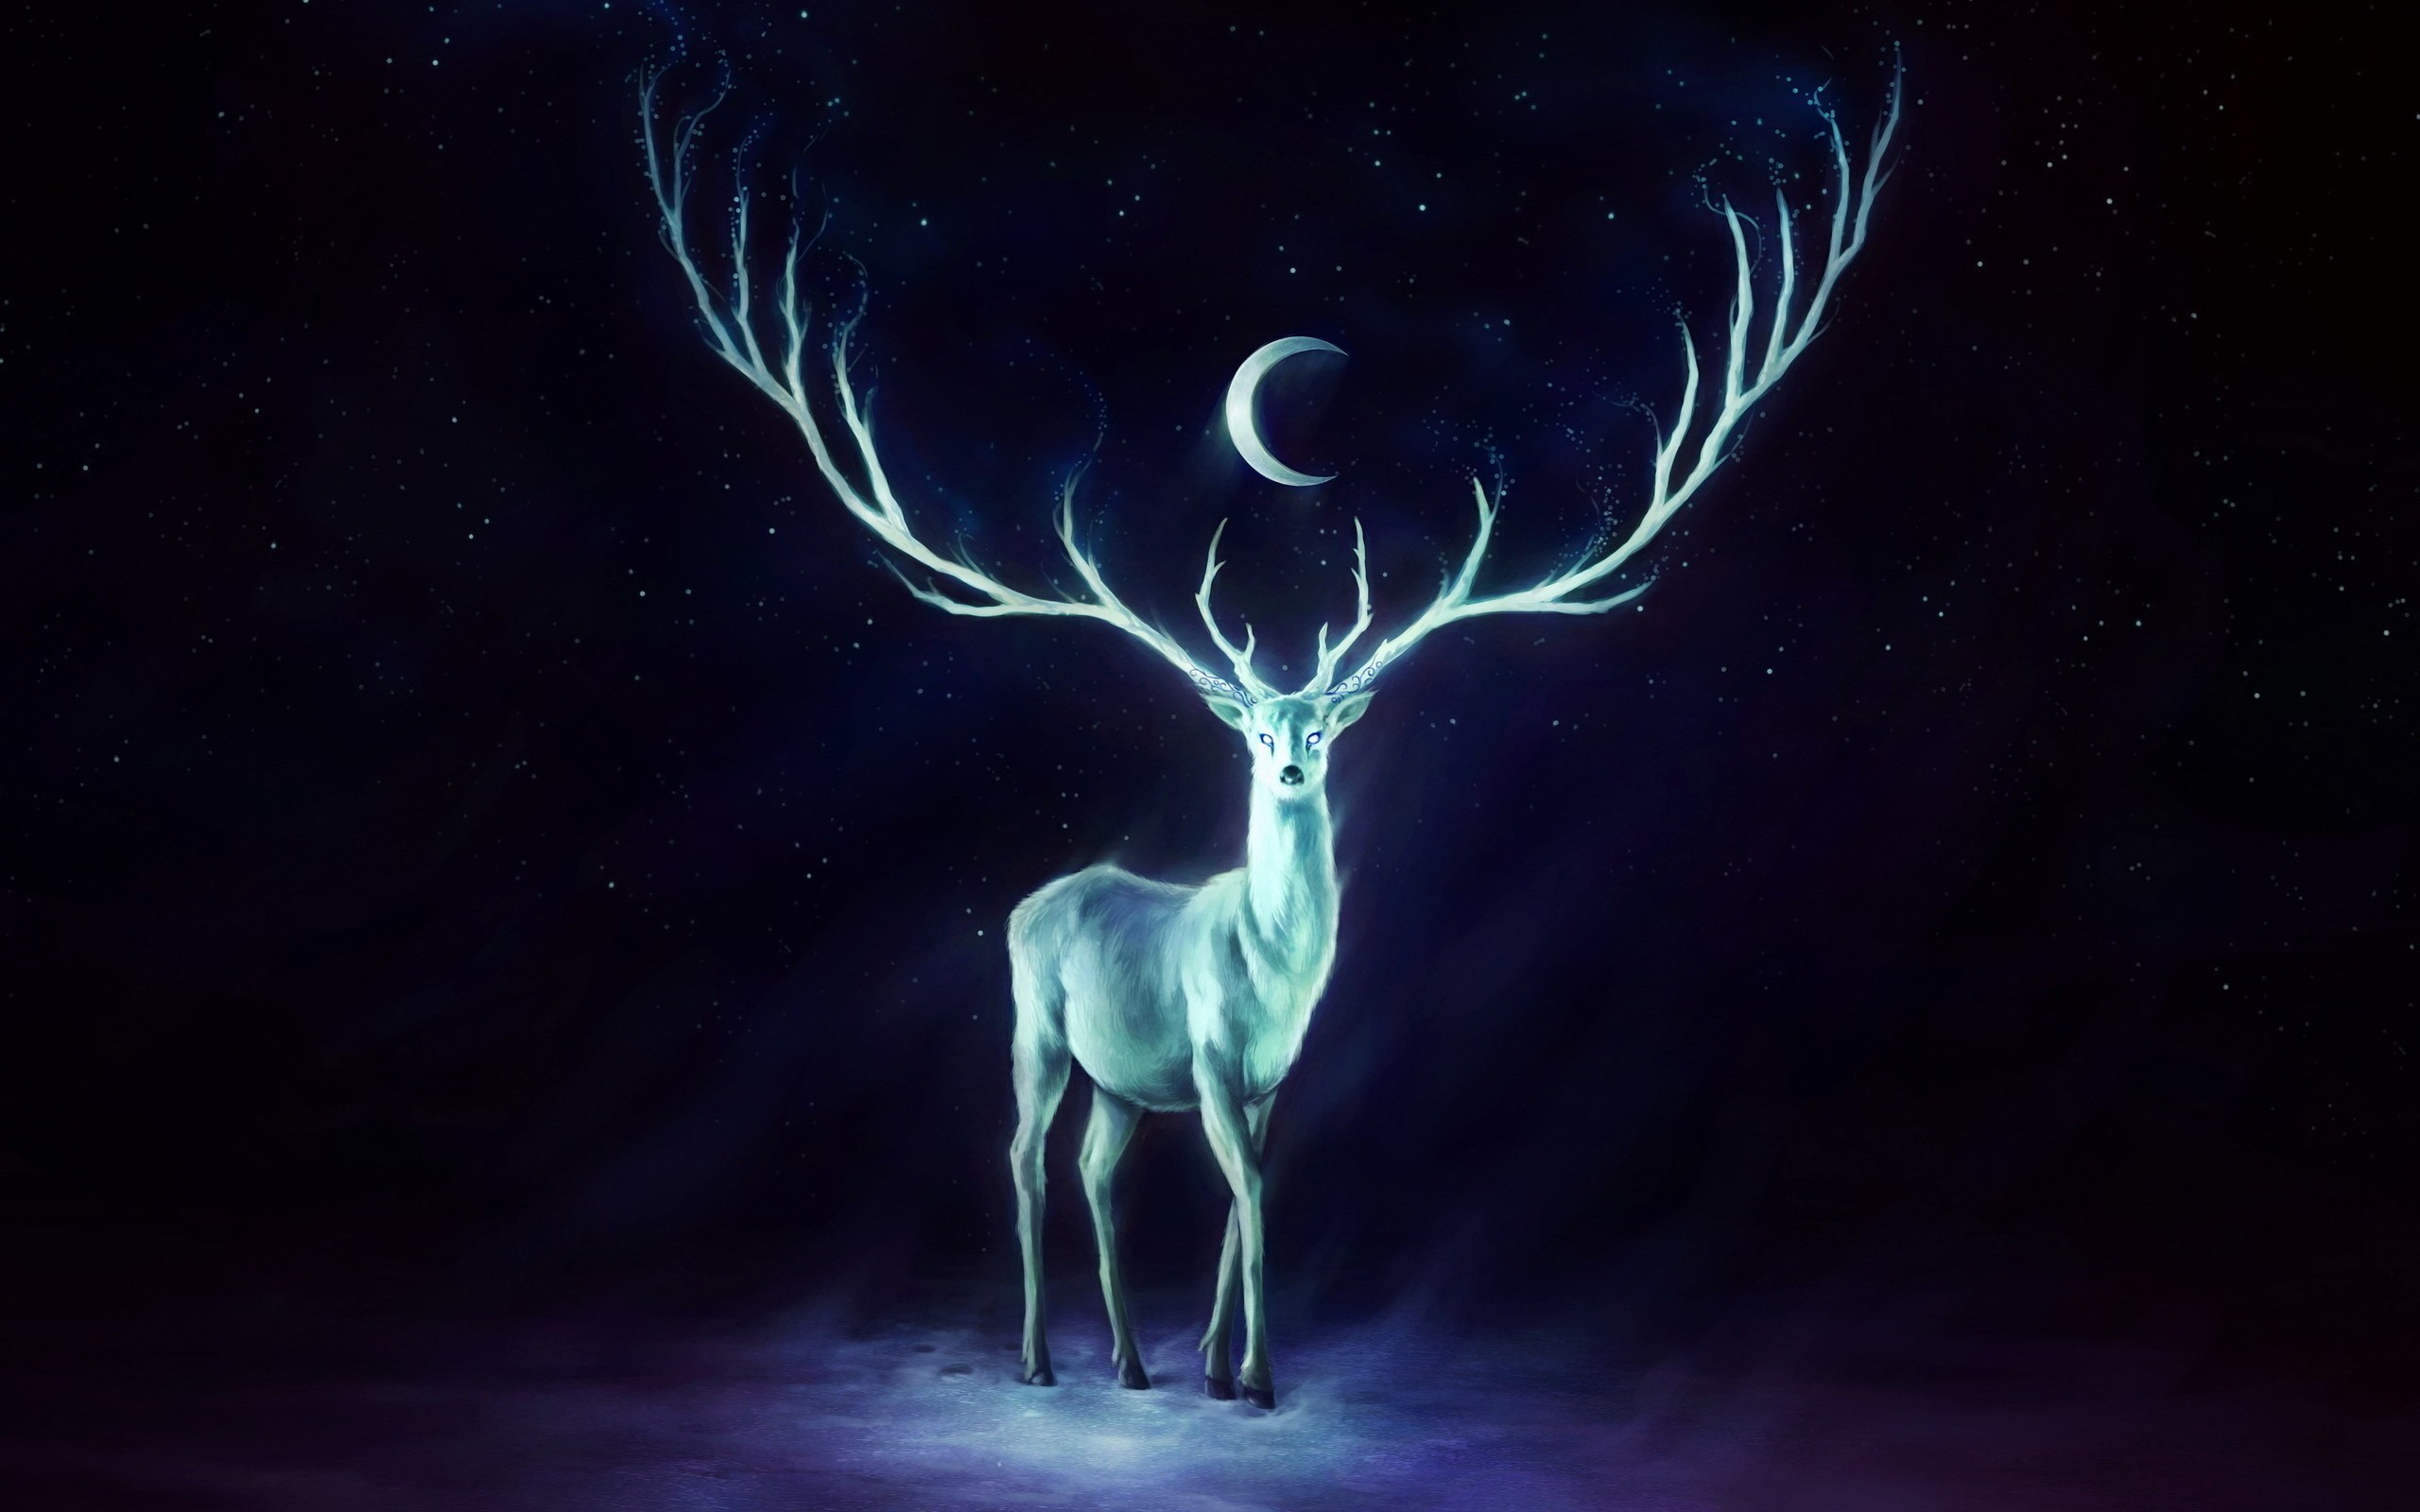 General 2560x1600 artwork crescent moon painting deer antlers stags fantasy art animals cyan violet Jonas Jodicke digital art